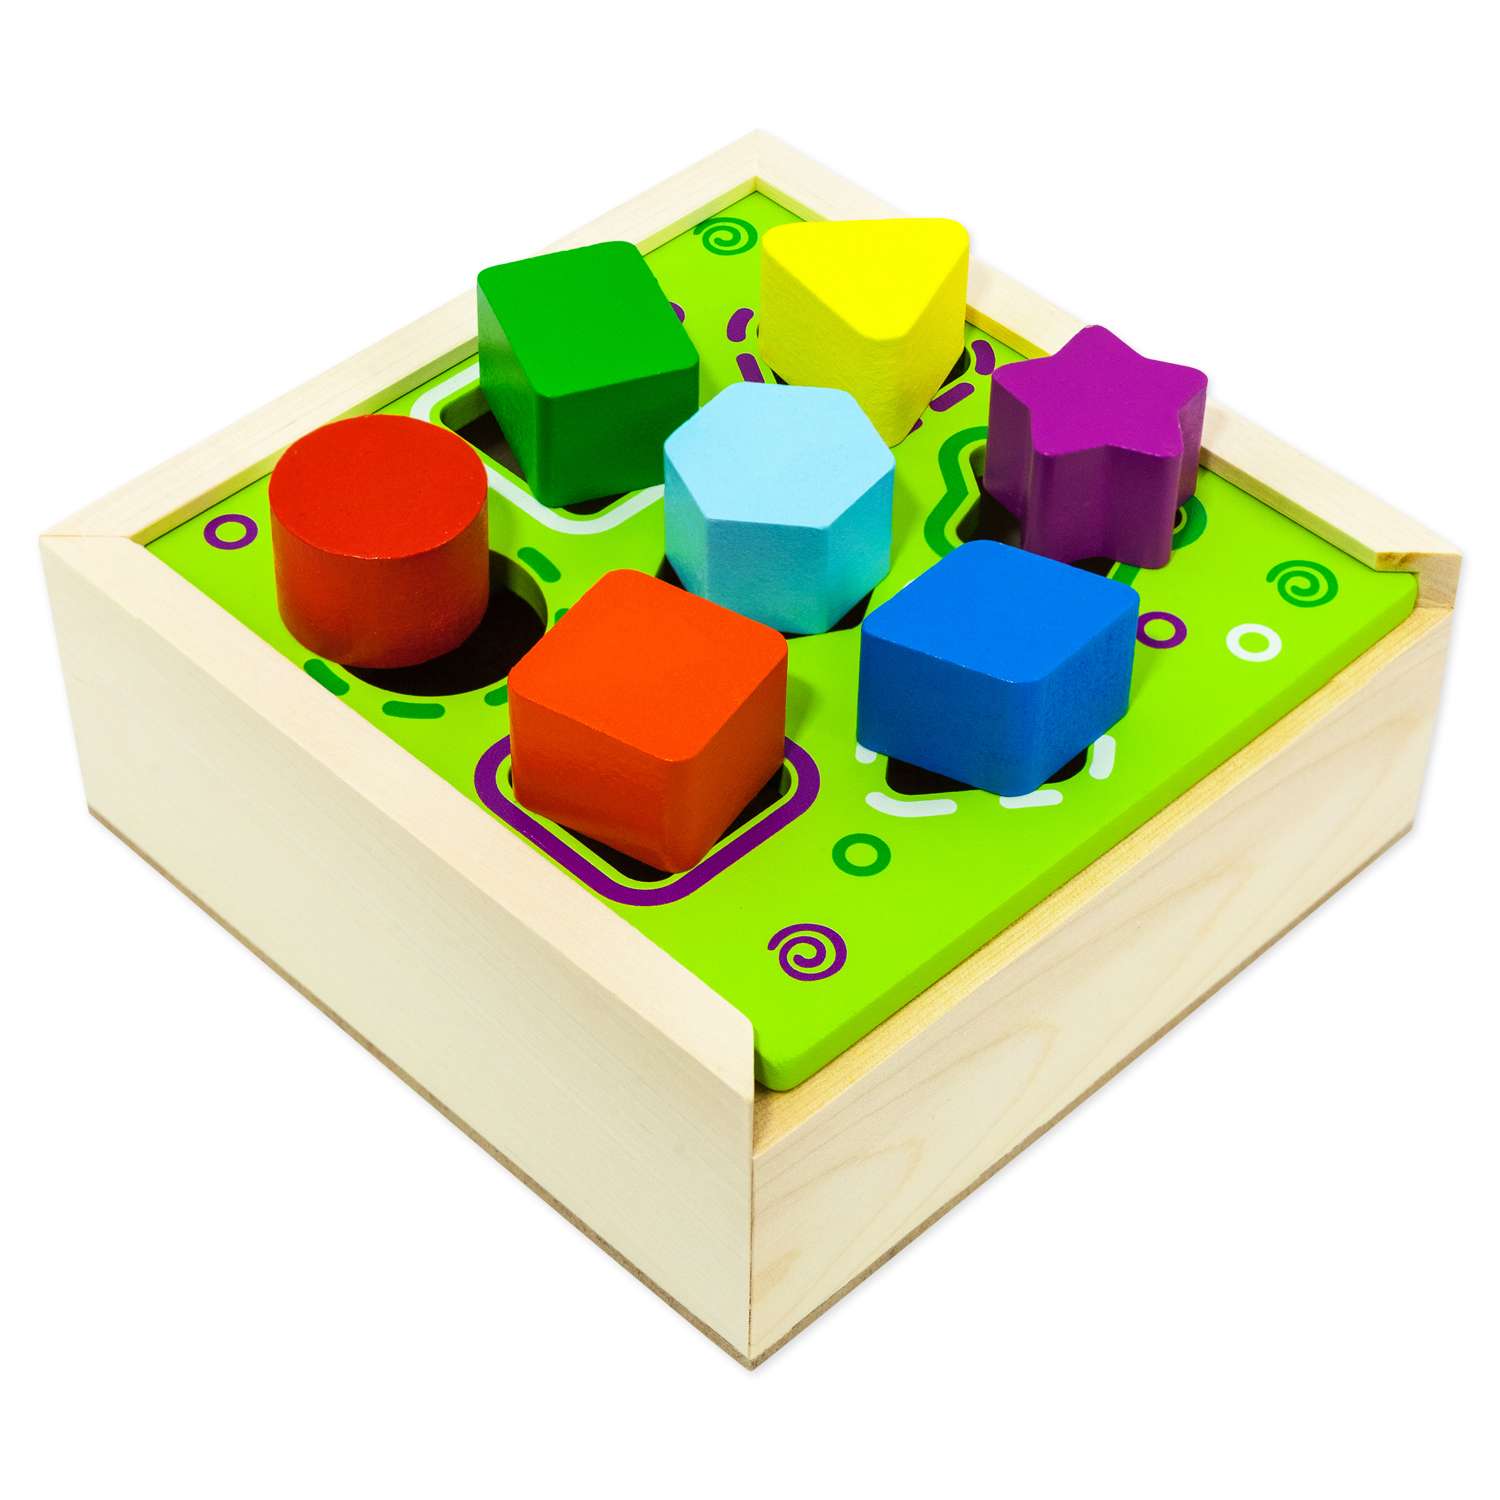 Сортер ящик 7 фигур Alatoys развивающая деревянная игрушка Монтессори + гайд с играми - фото 12